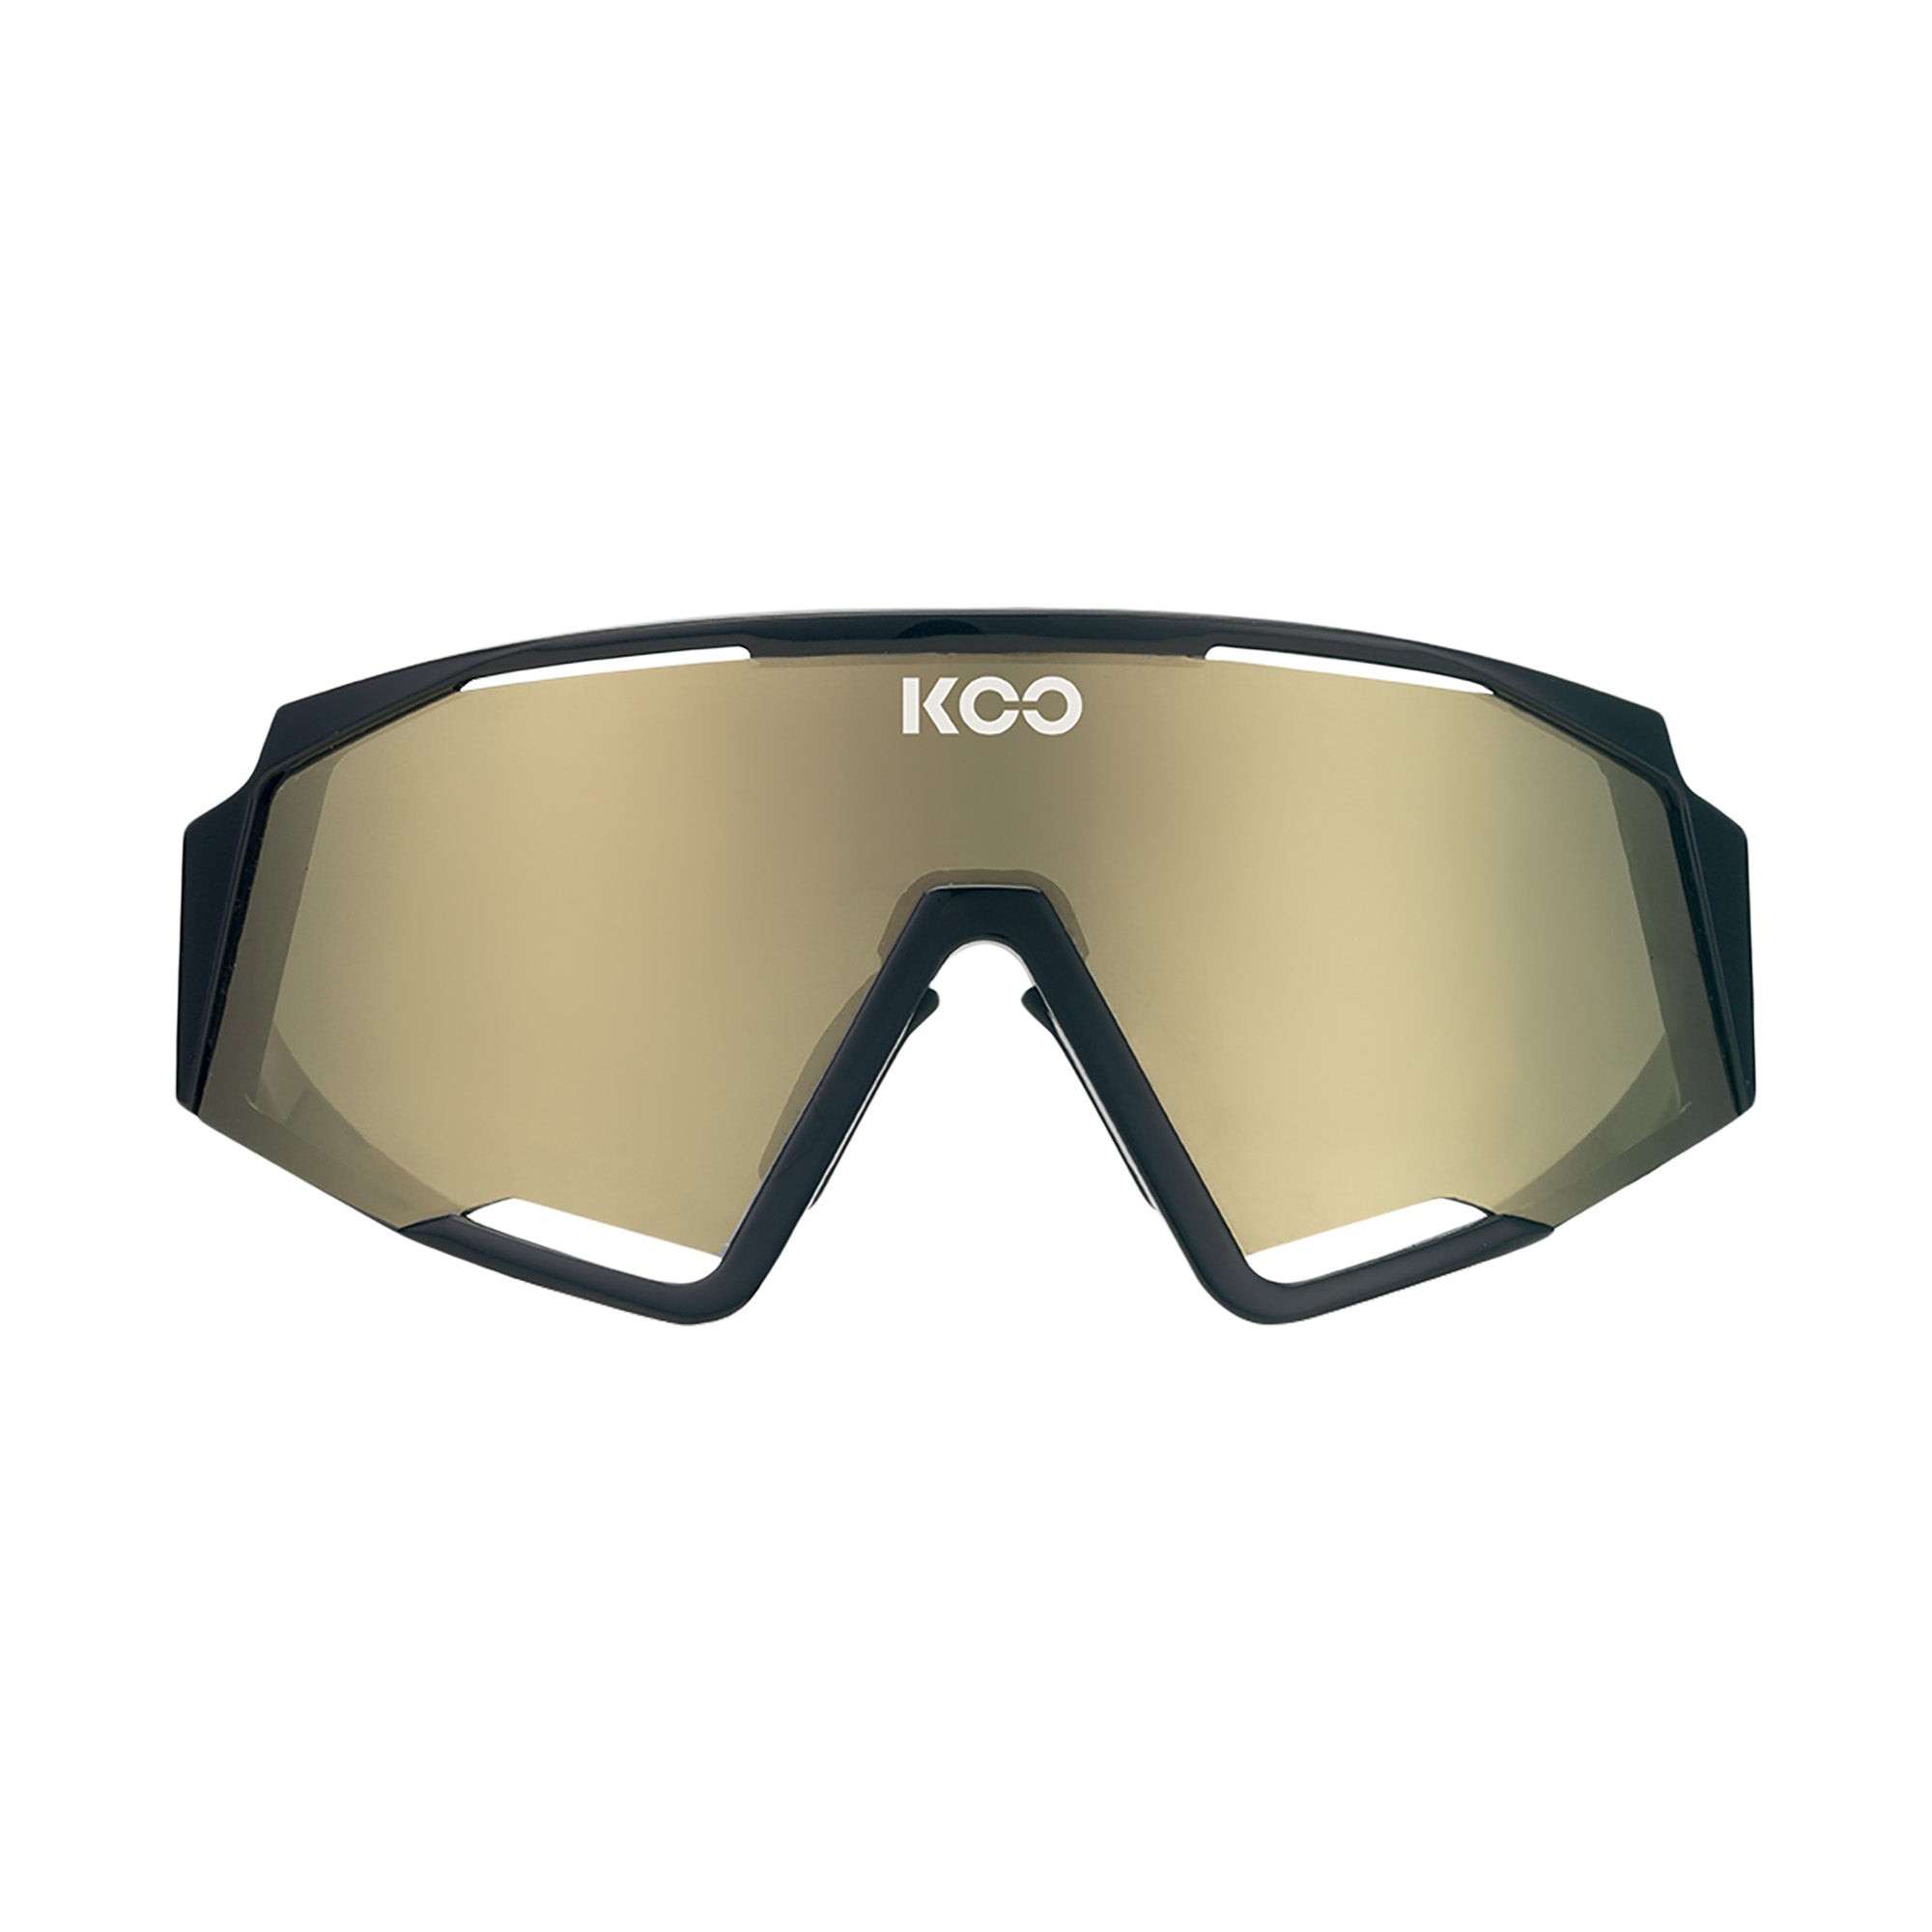 Koo Spectro Glasses Black Orange Lens